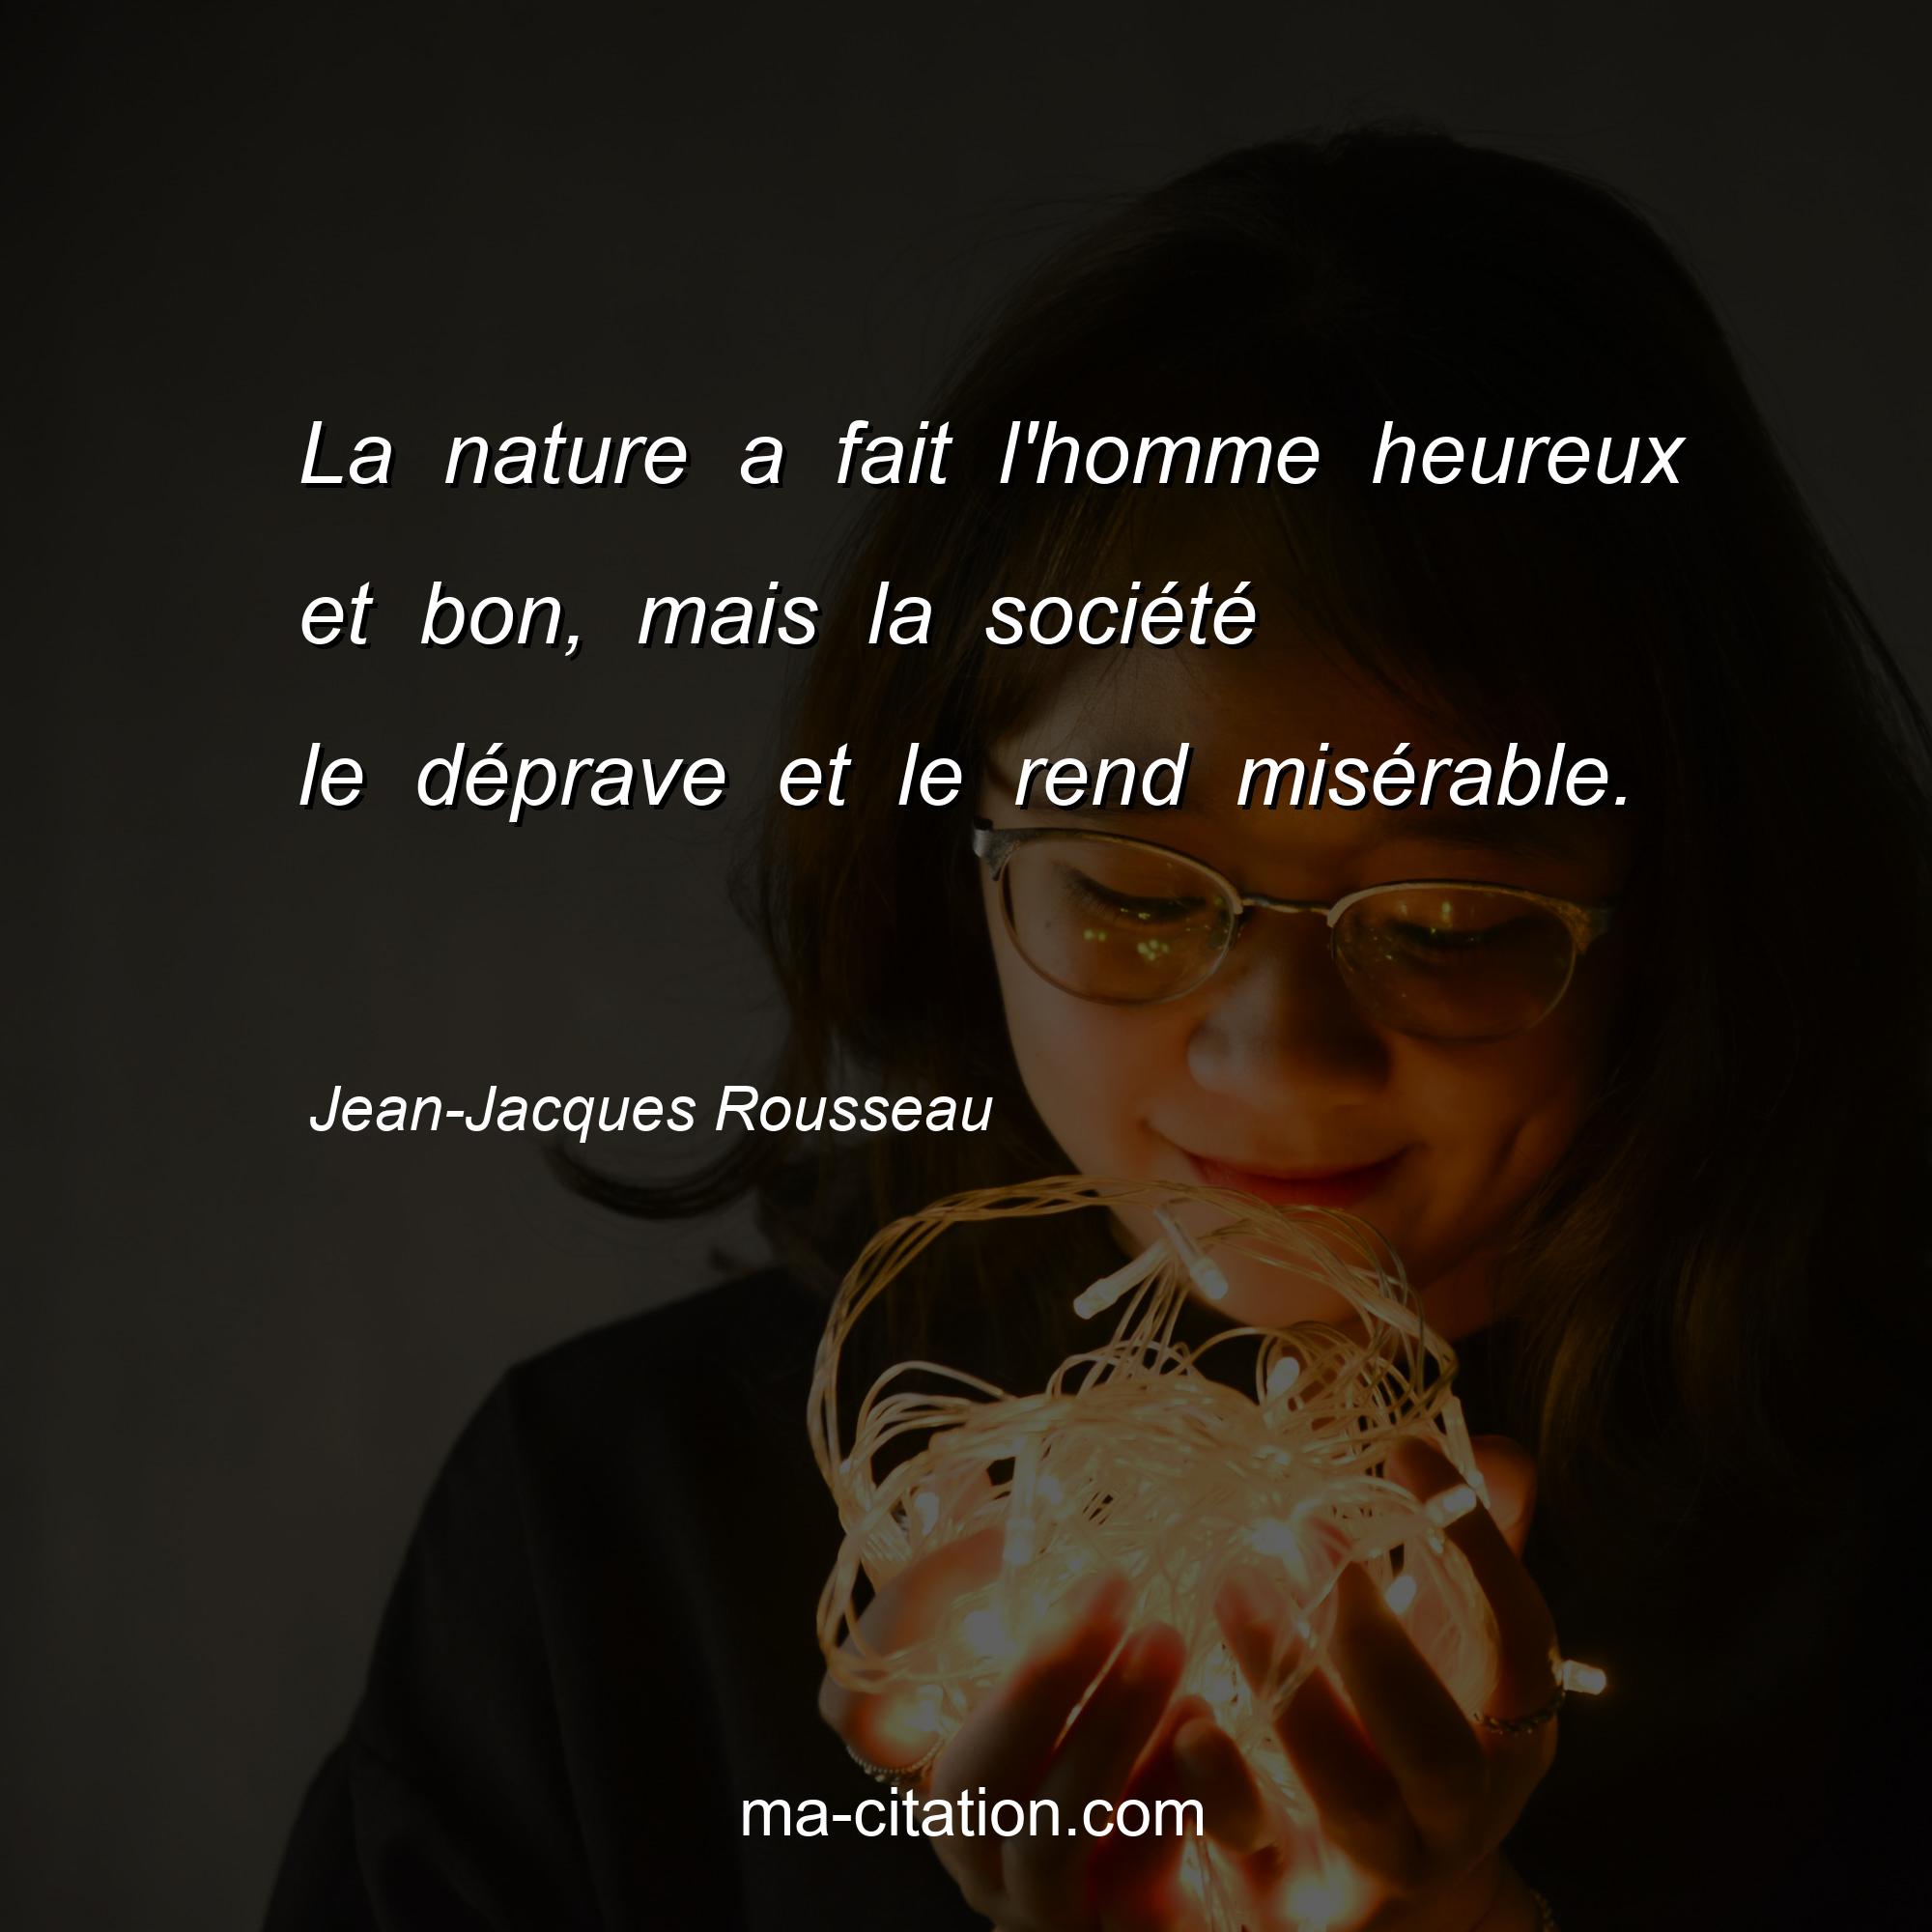 Jean-Jacques Rousseau : La nature a fait l'homme heureux et bon, mais la société le déprave et le rend misérable. 